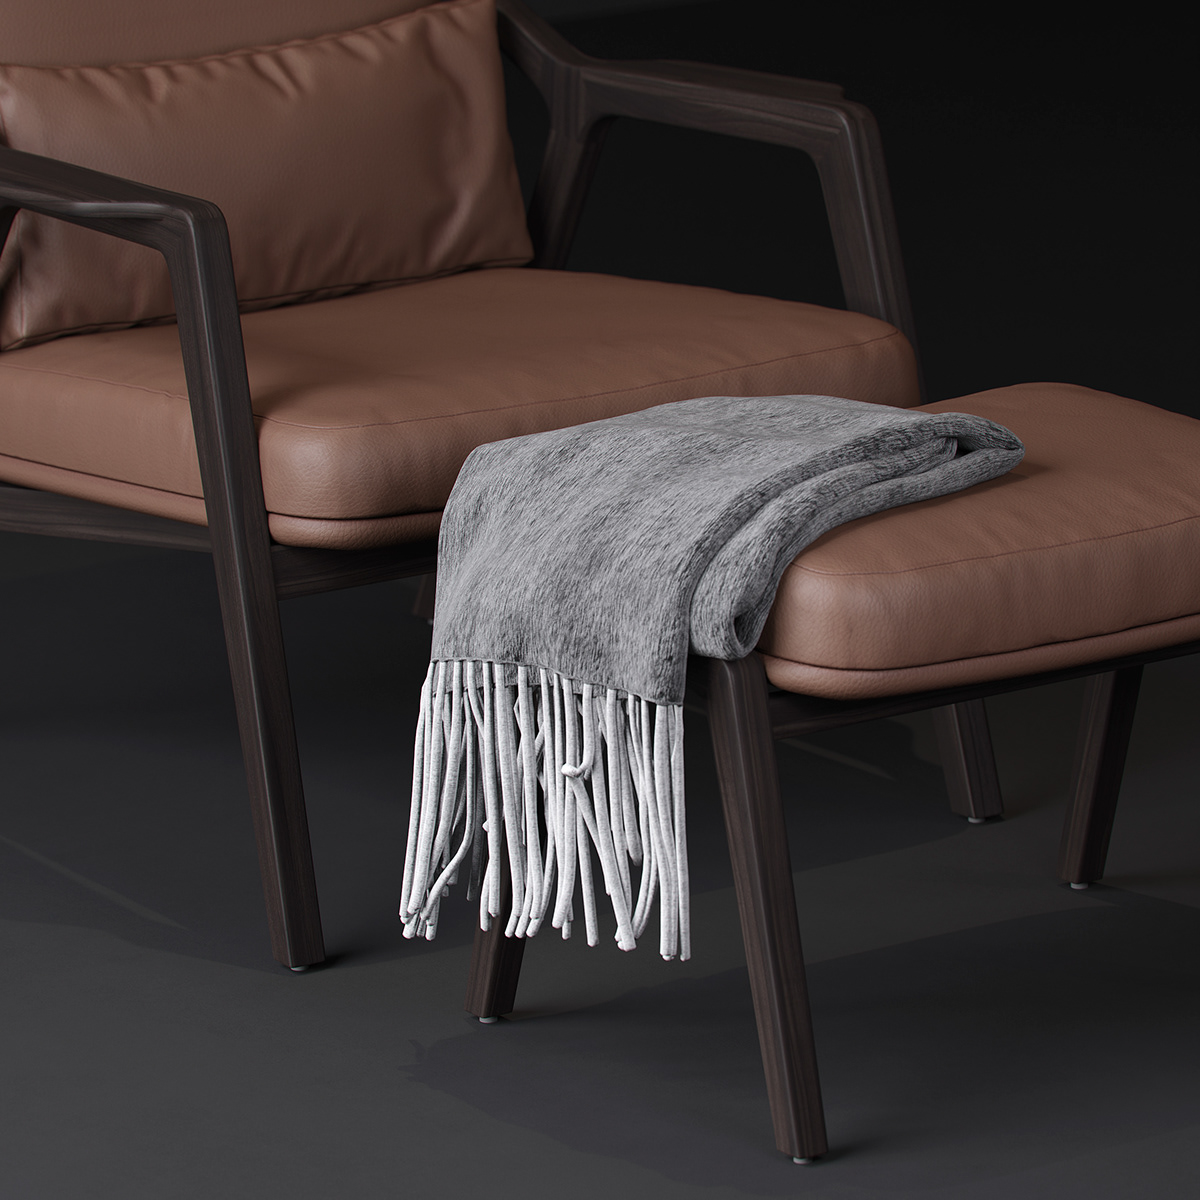 3ds max architecture archviz armchair chair furniture Interior interior design  Render visualization